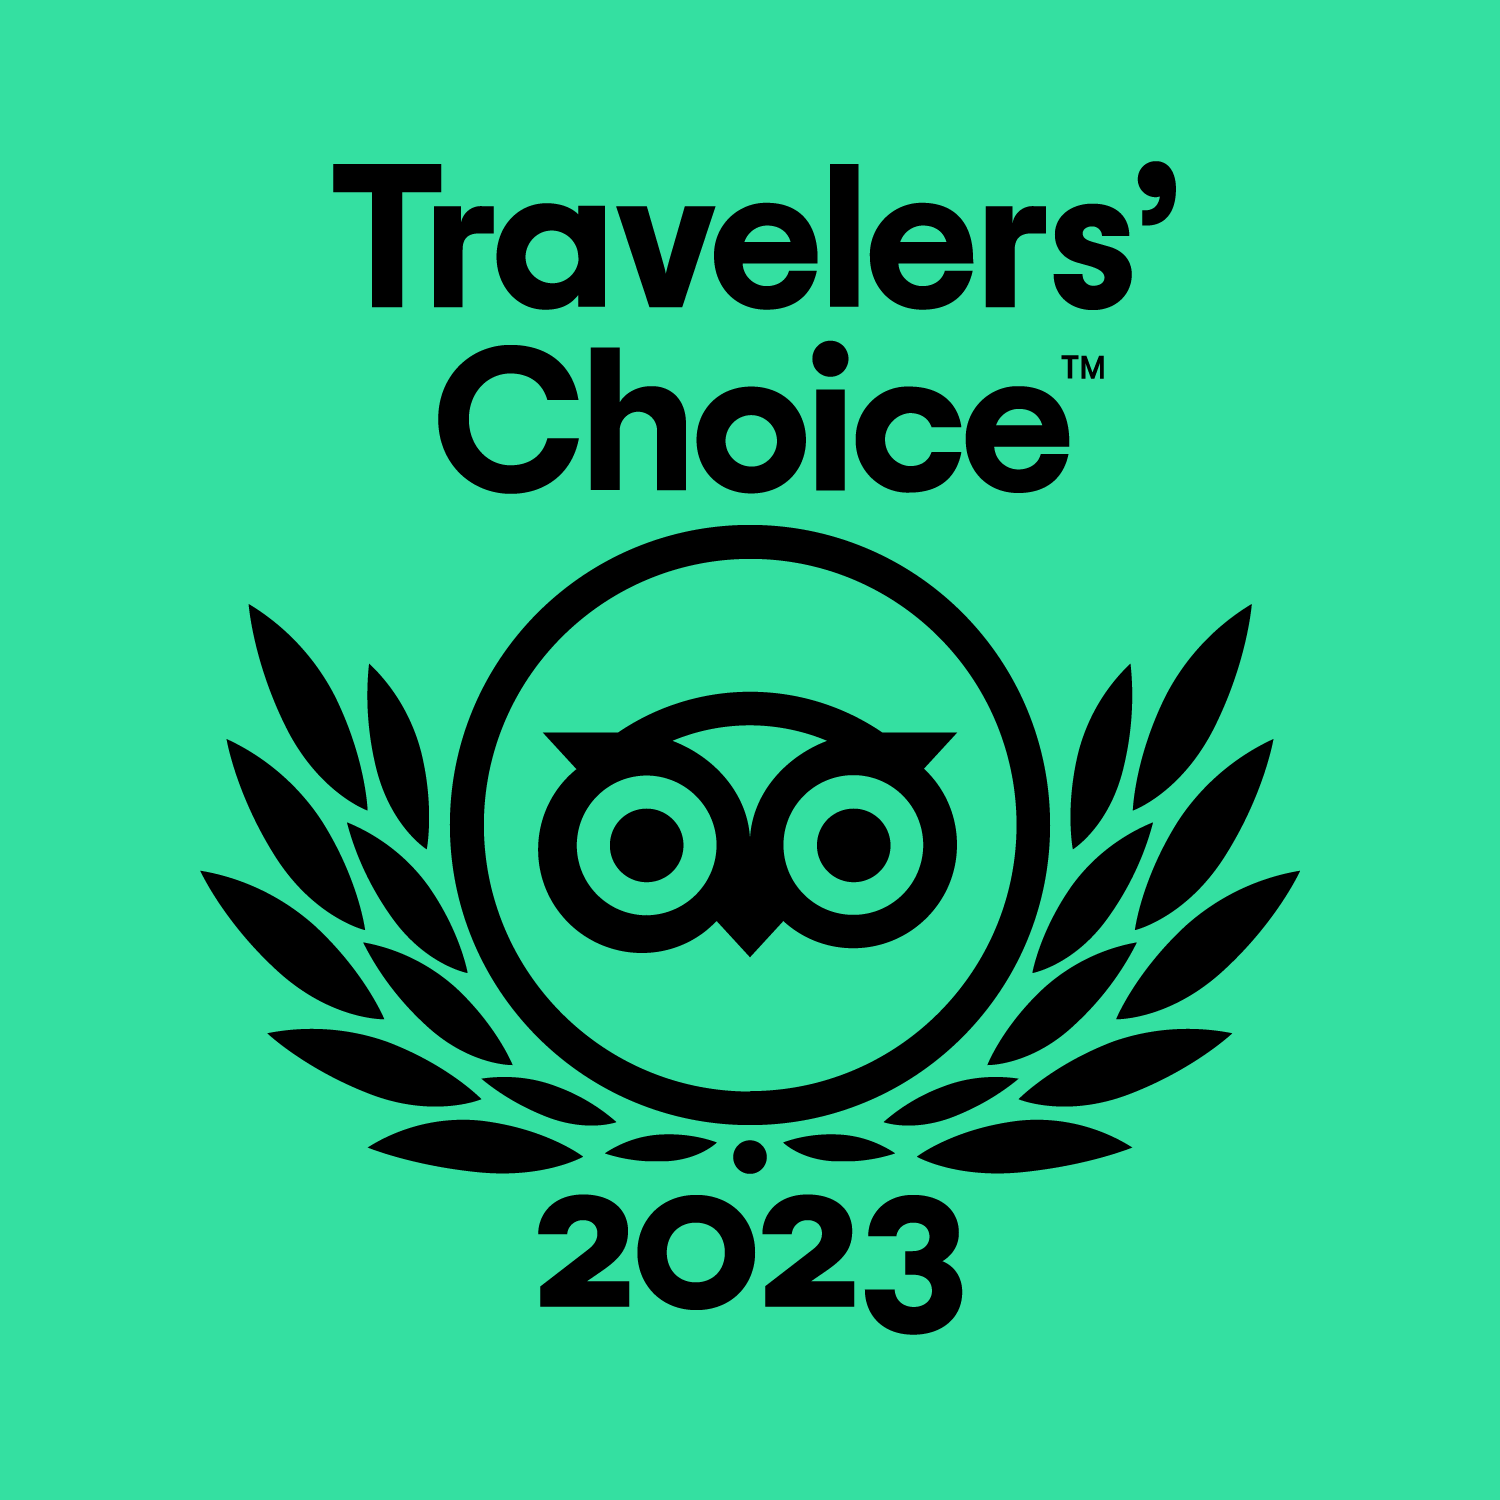 Trip Advisor Travelers Choice Award 2023